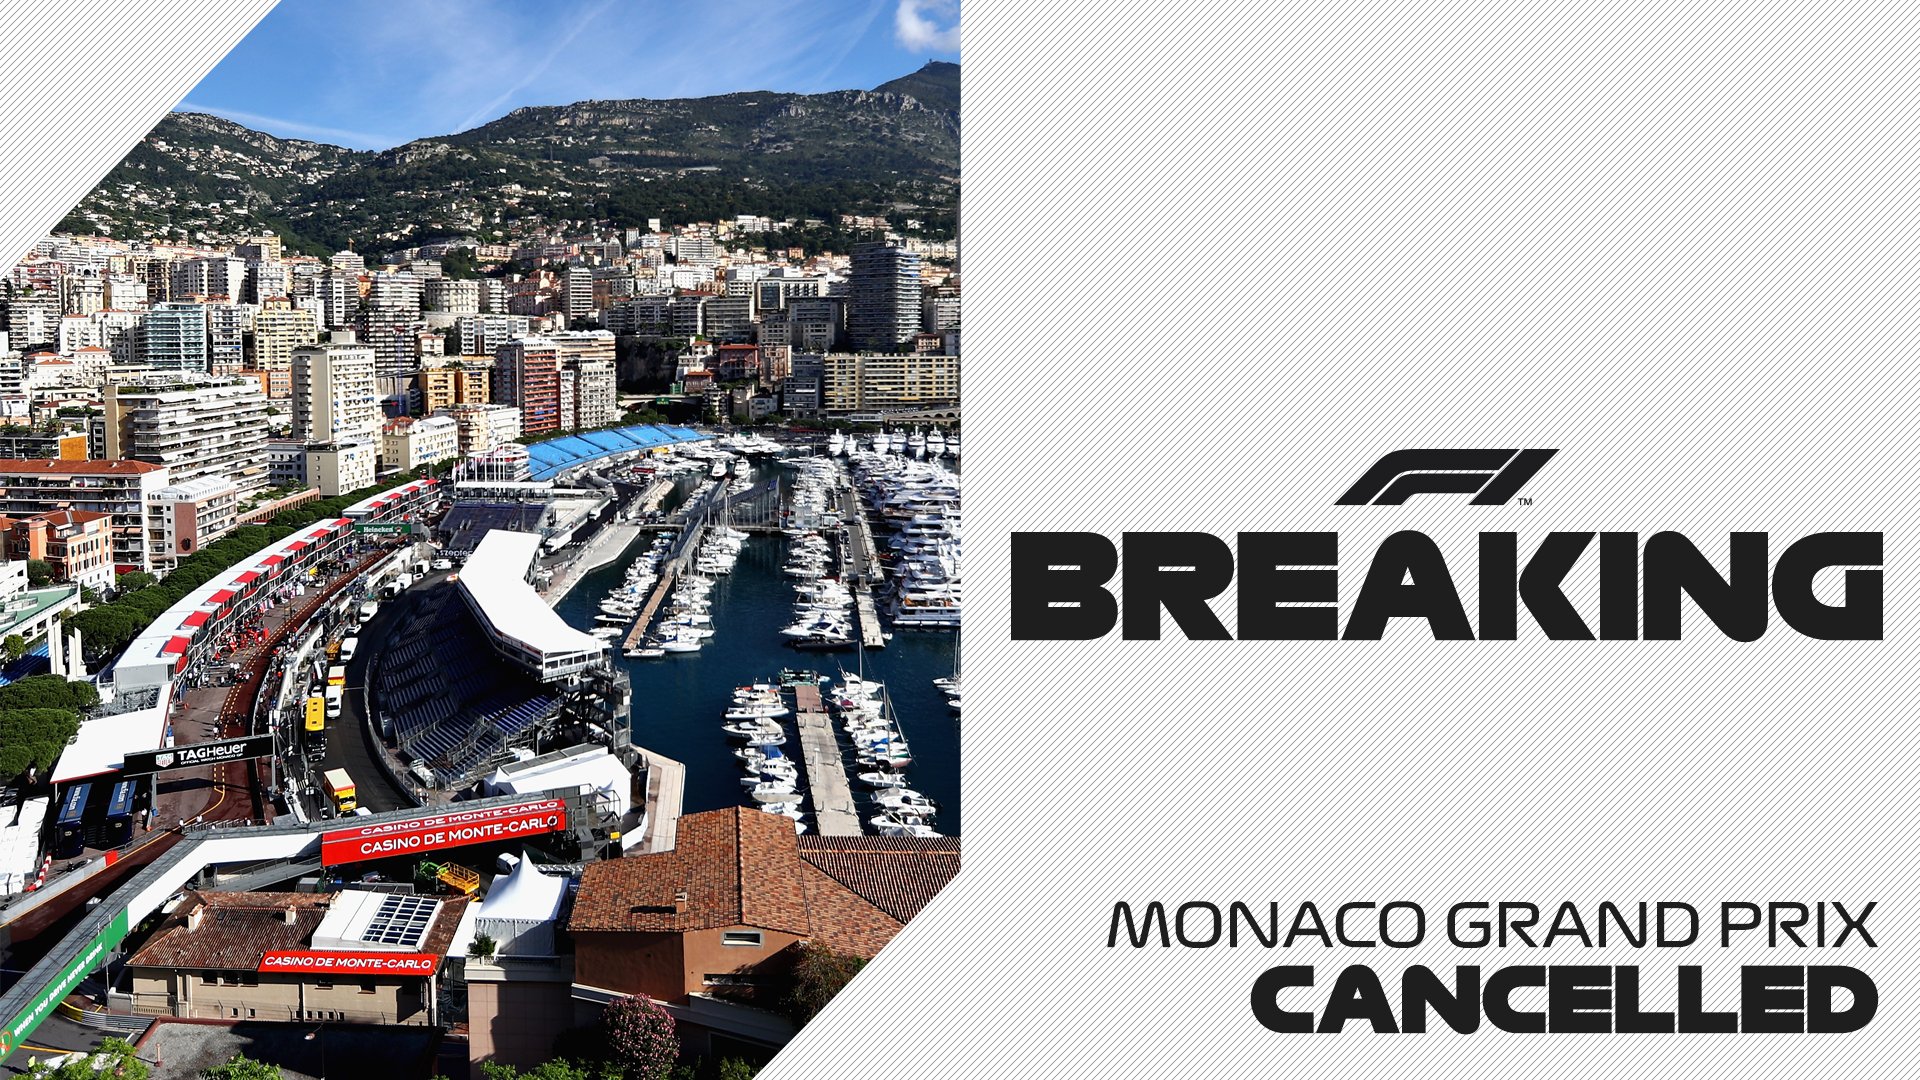 Prix monaco grand Monaco Grand